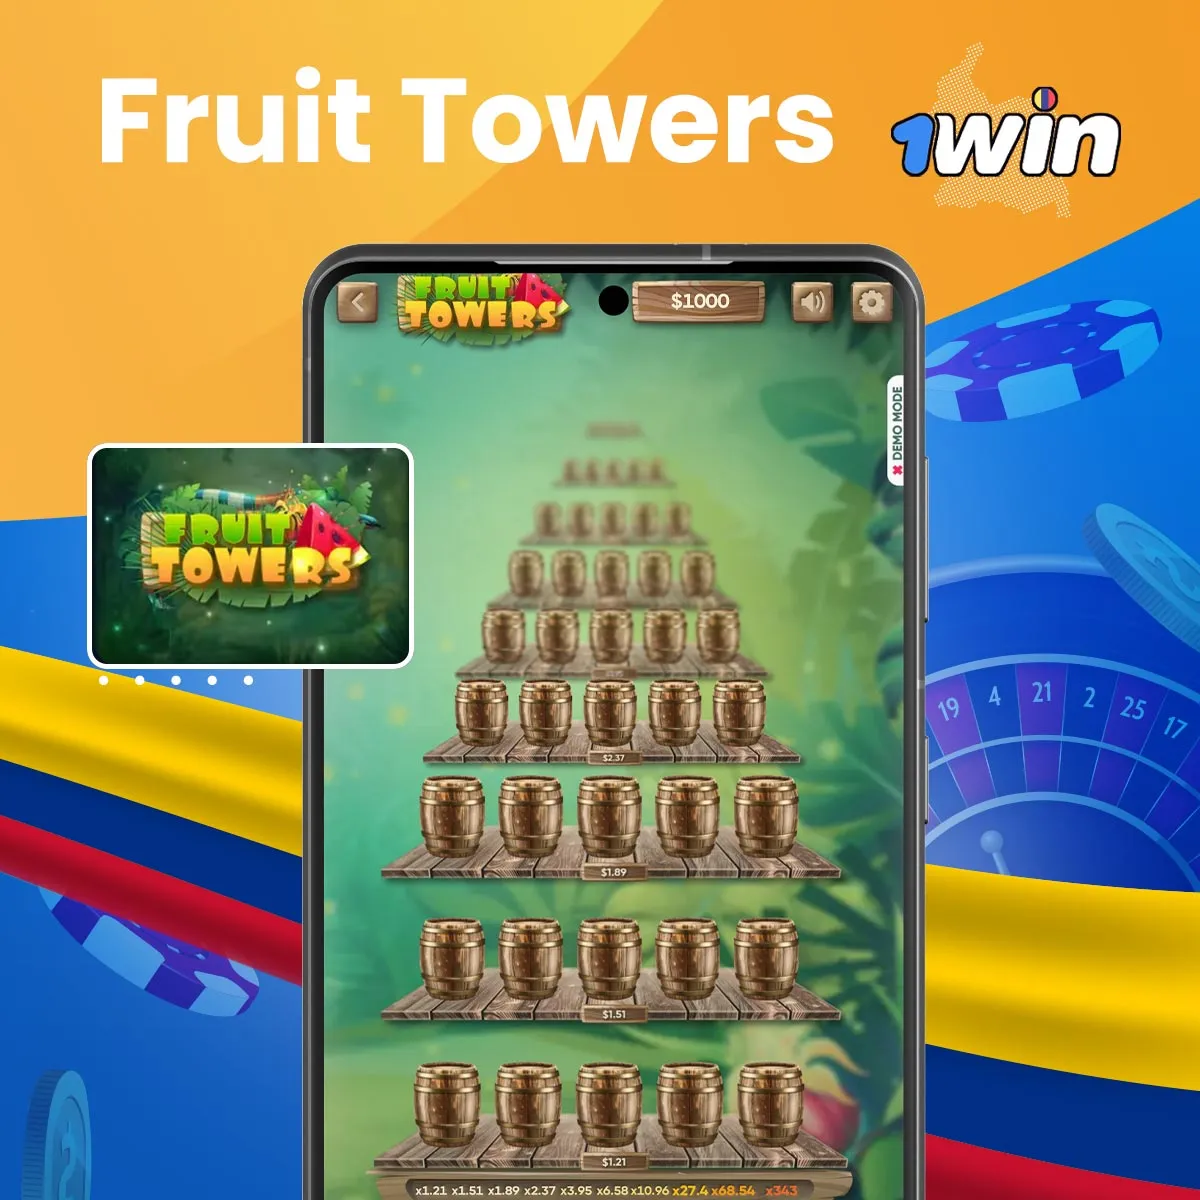 Juega a Fruit Towers en 1win Casino en Colombia